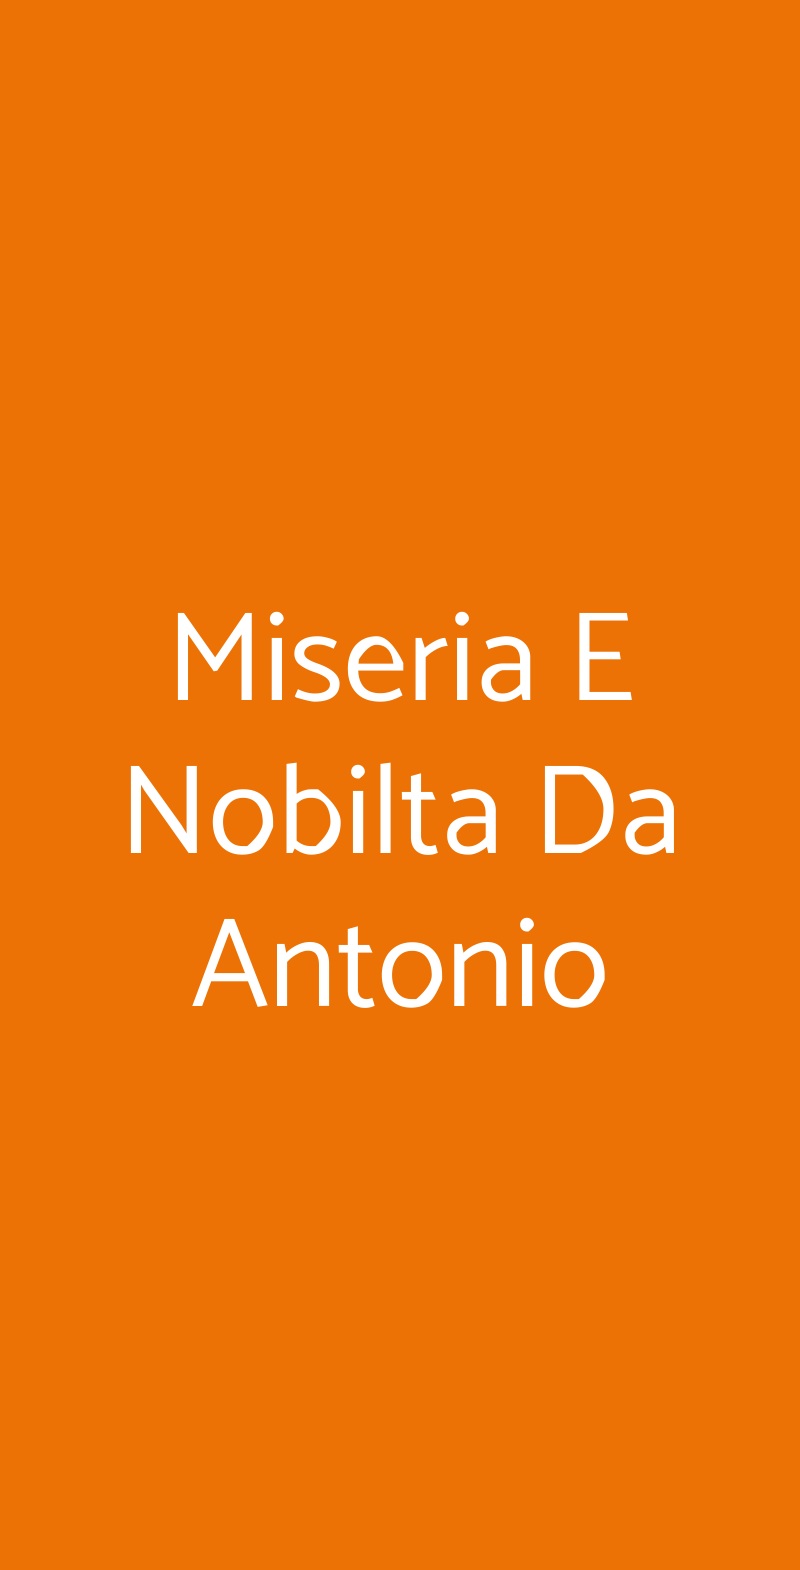 Miseria E Nobilta Da Antonio Trieste menù 1 pagina